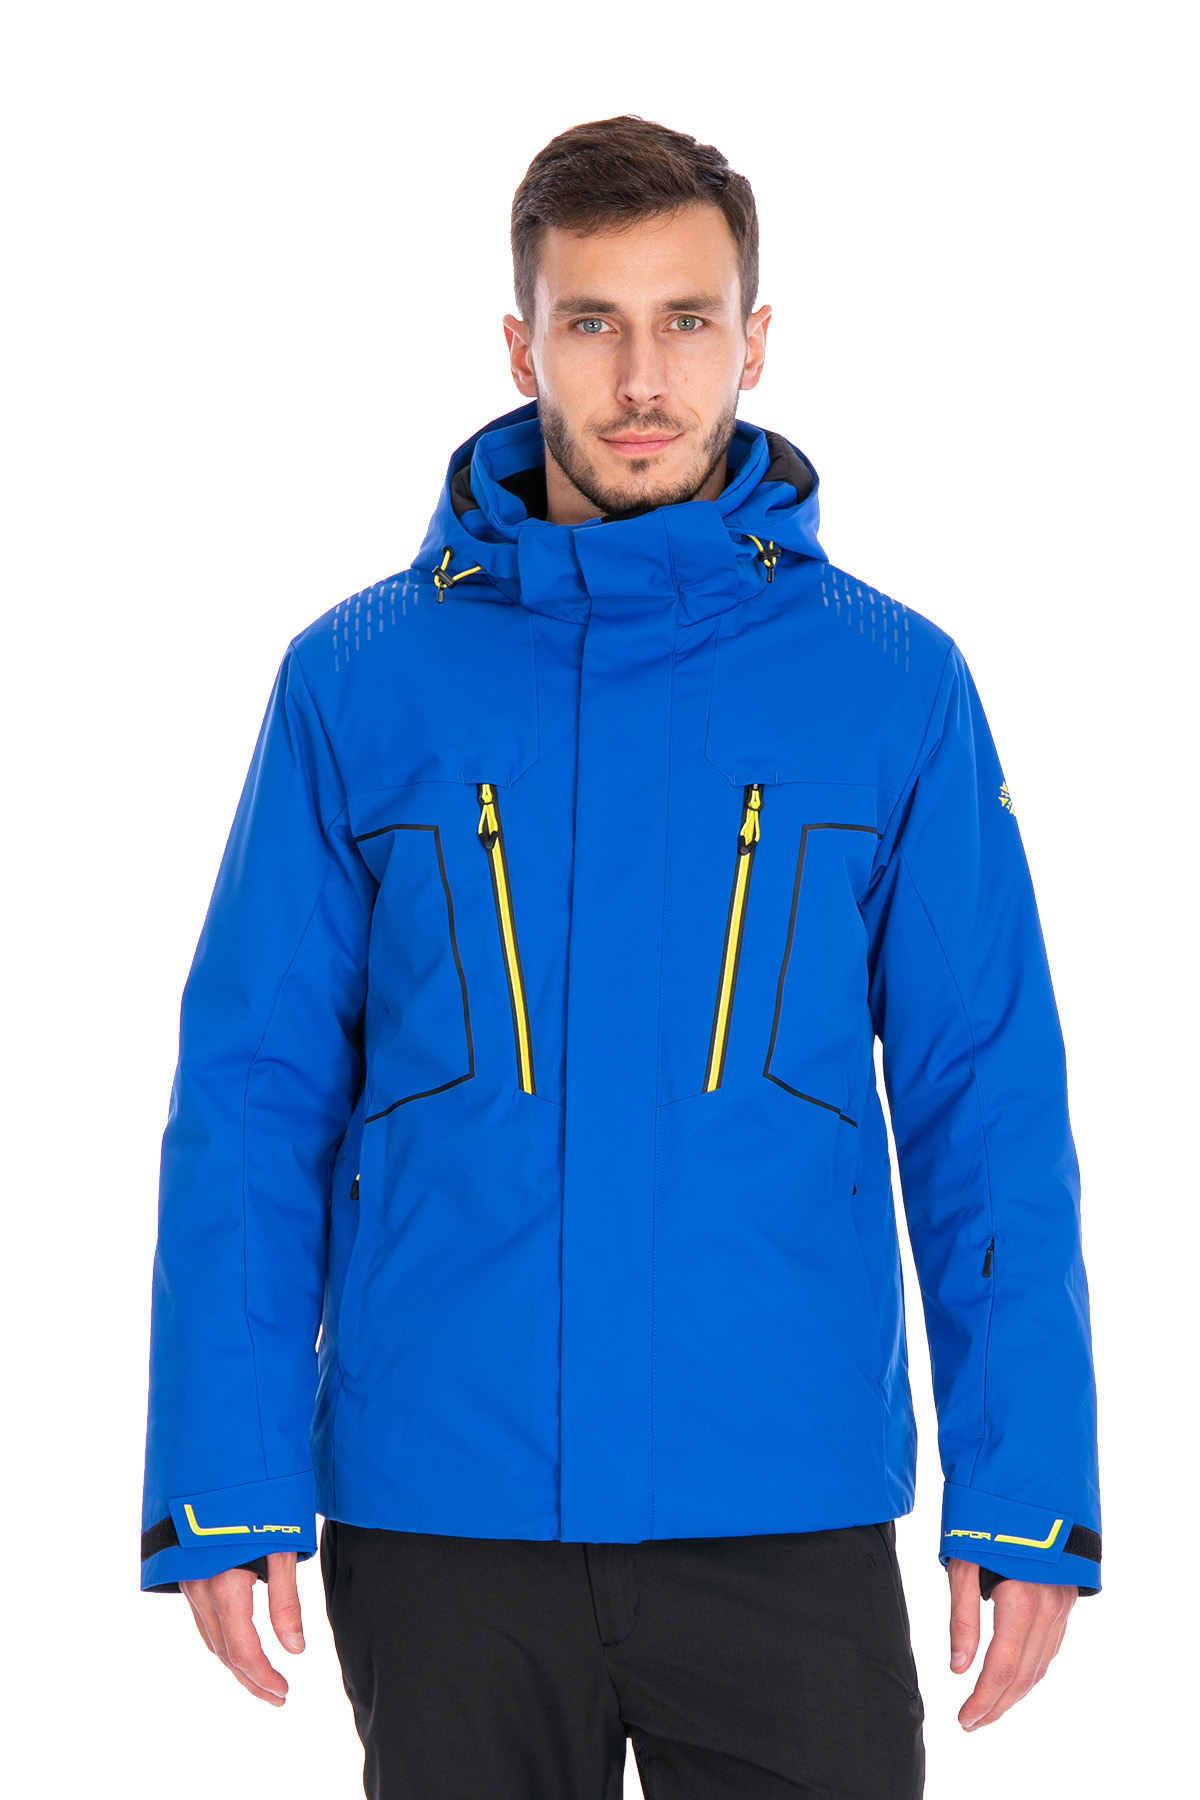 Мужская горнолыжная Куртка Lafor Синий, 767013 (48, m)